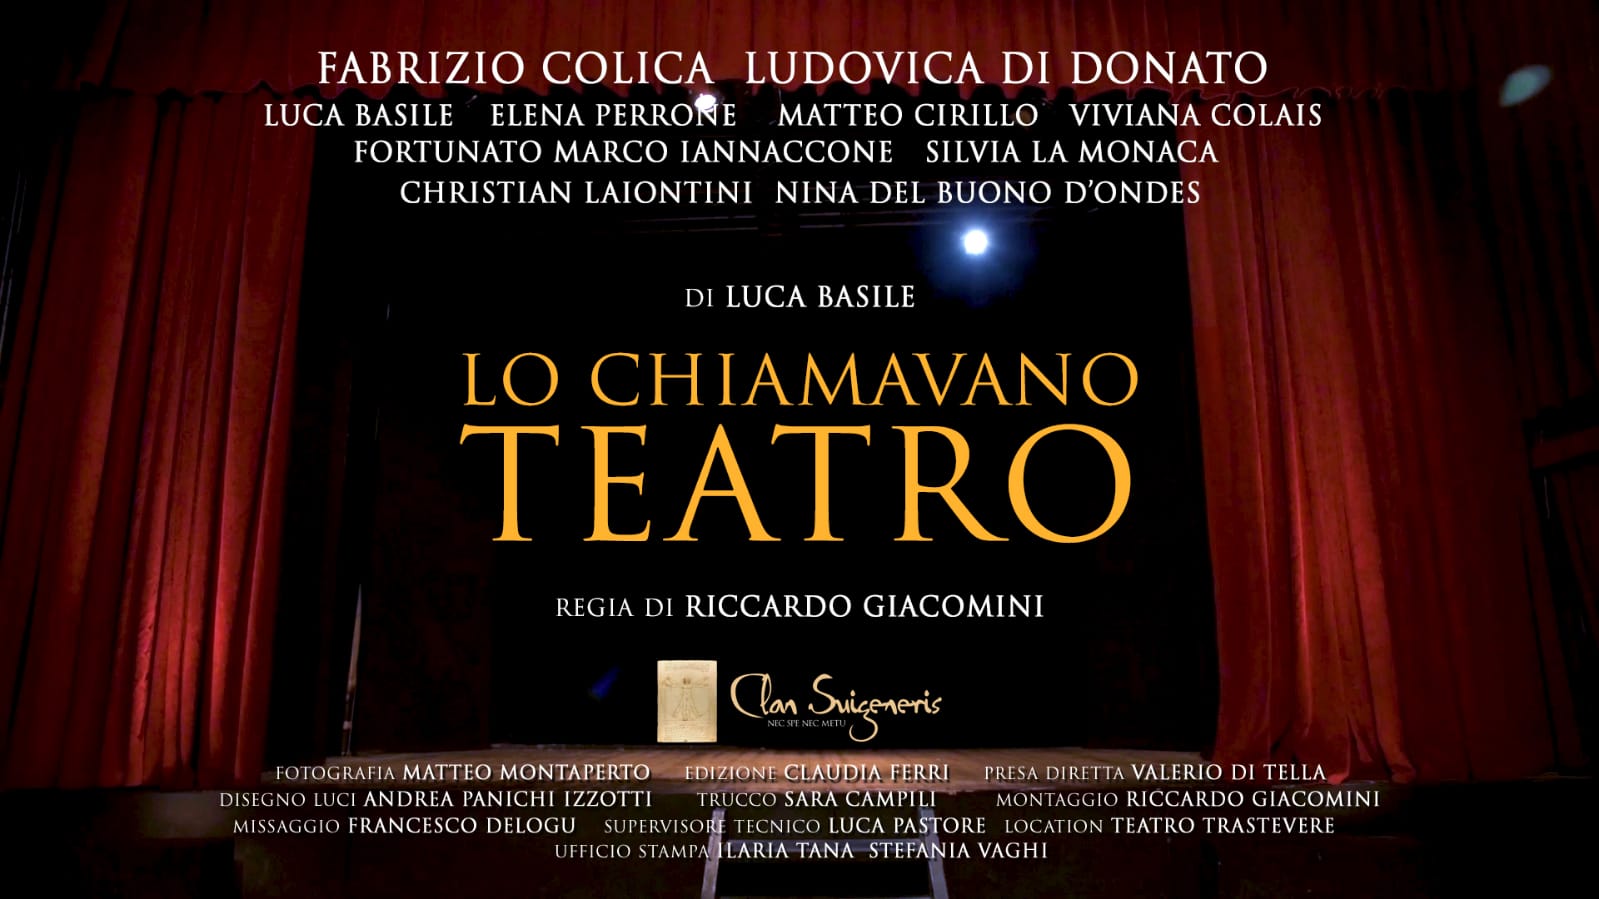 Lo chiamavano Teatro, il corto di Luca Basile, con Fabrizio Colica e Ludovica Di Donato